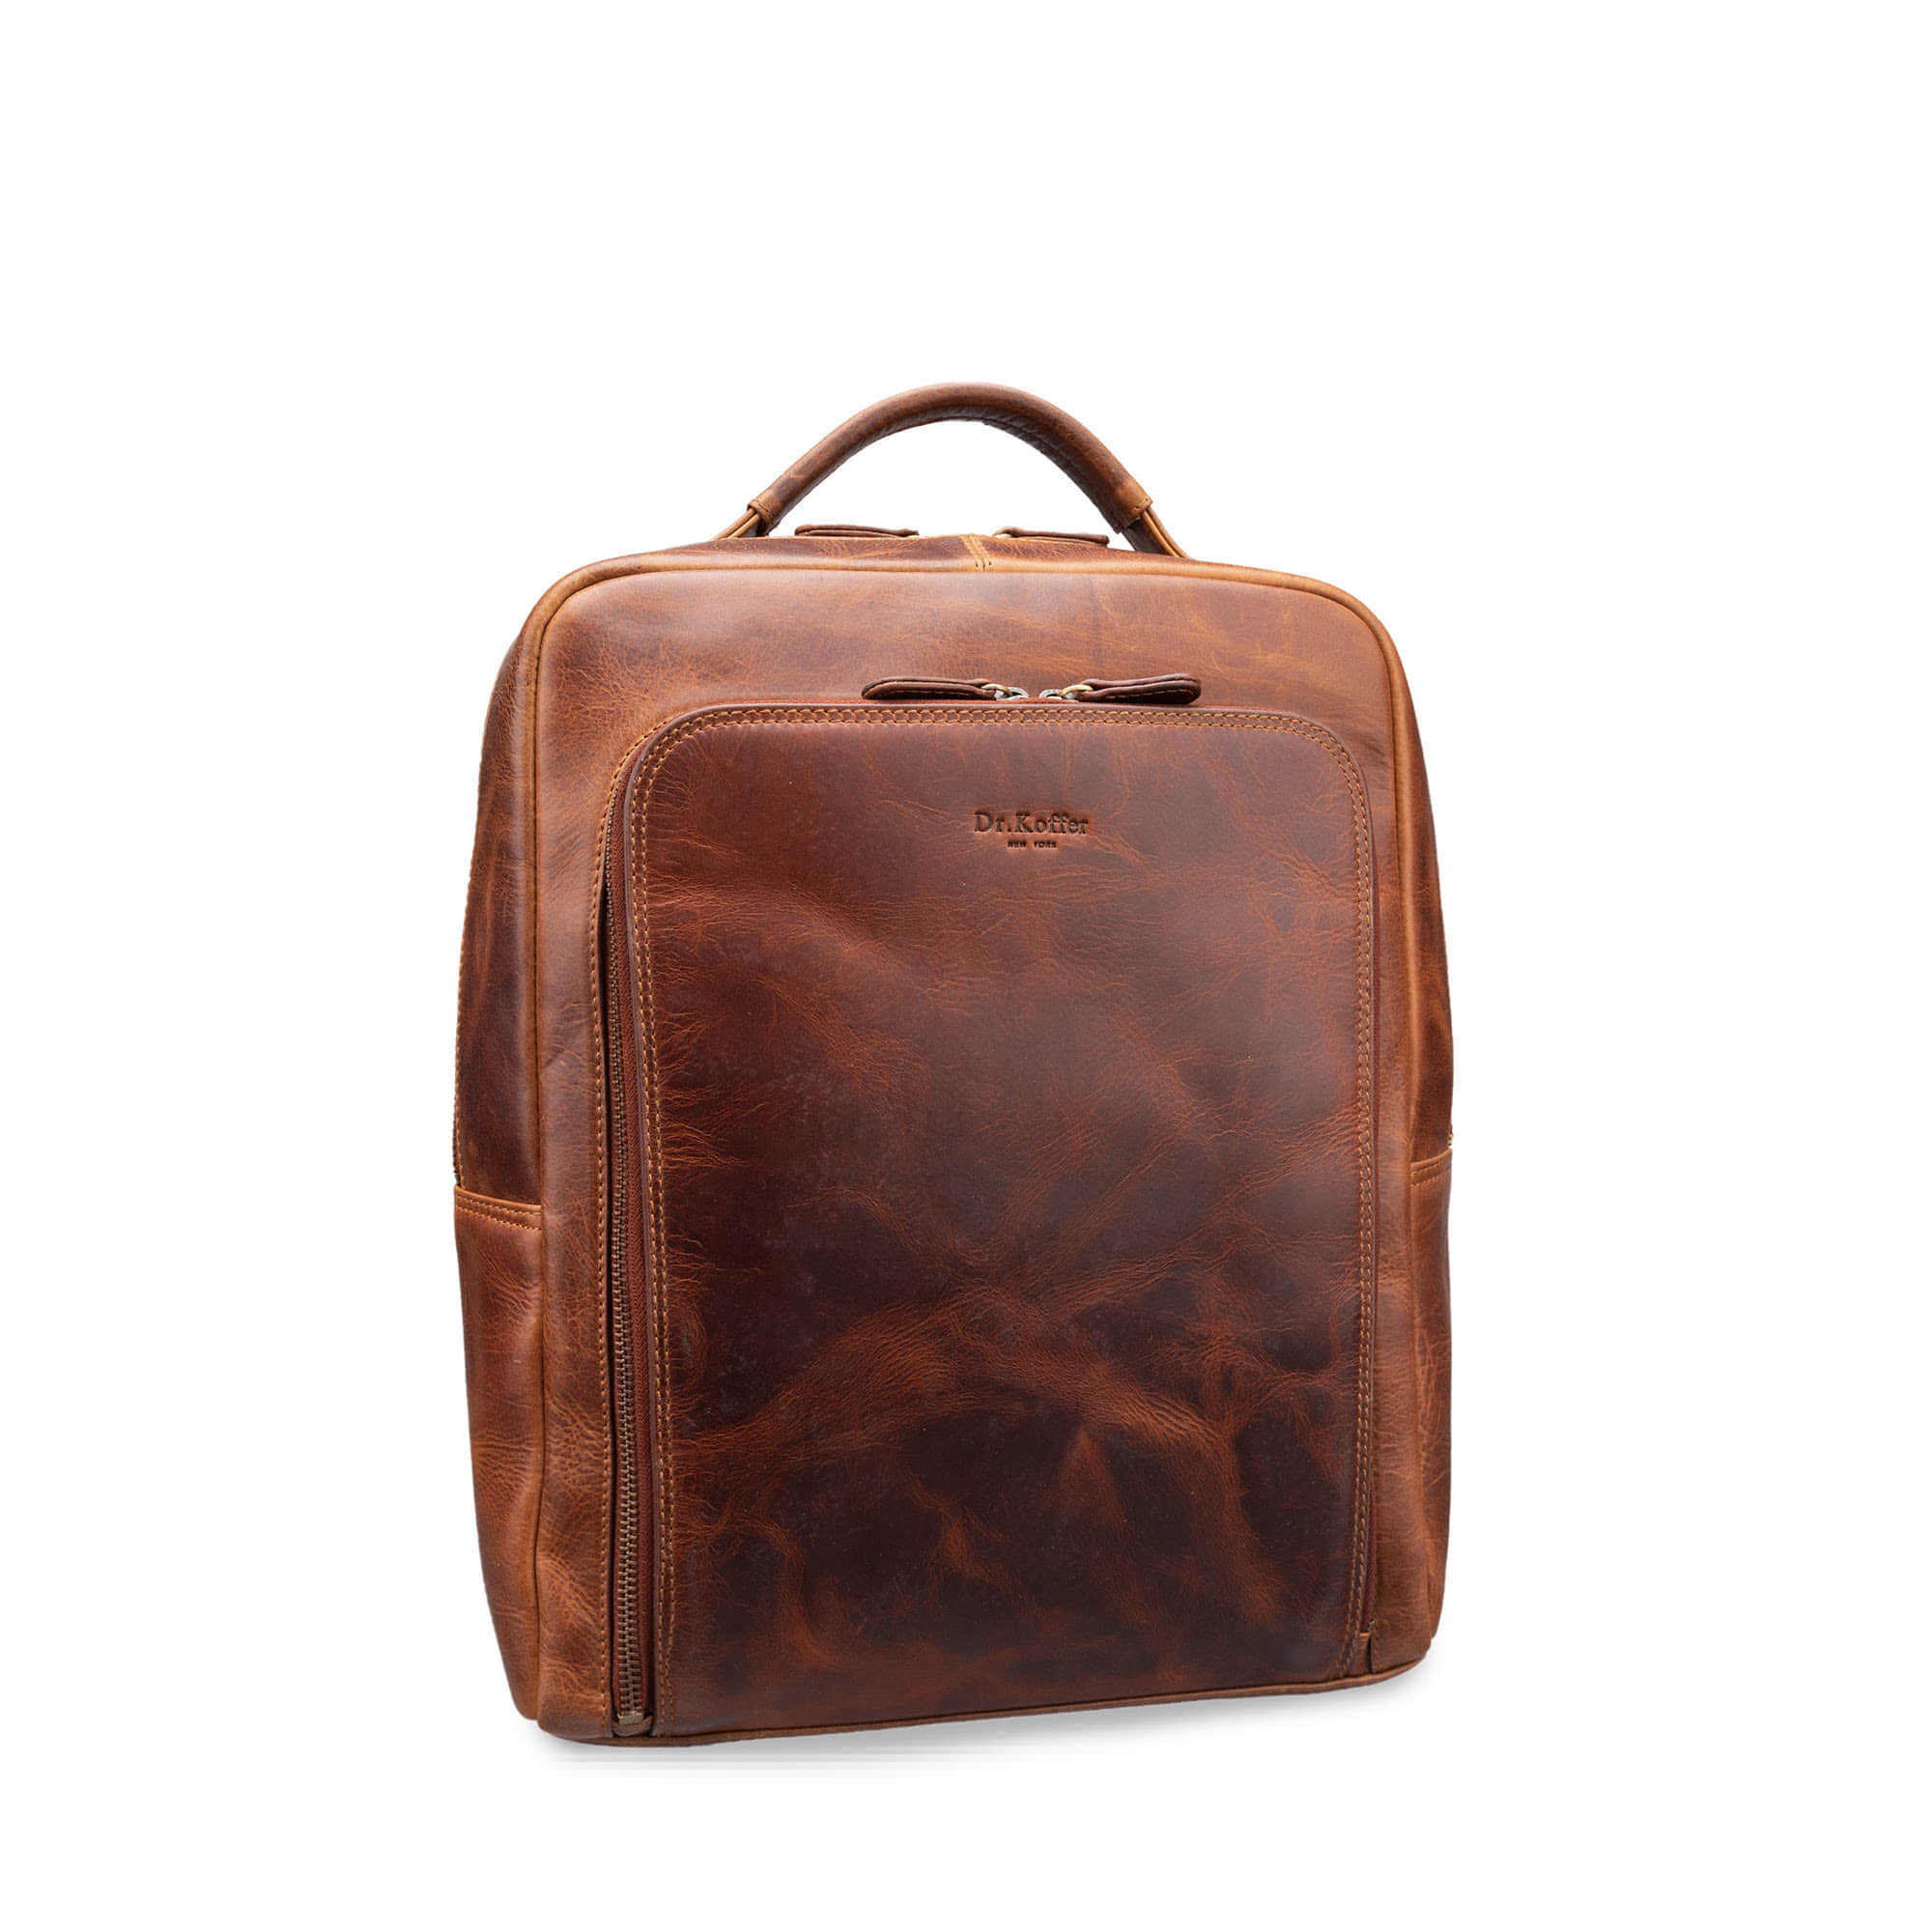 Др.Коффер B402817-109-05 рюкзак, цвет коричневый